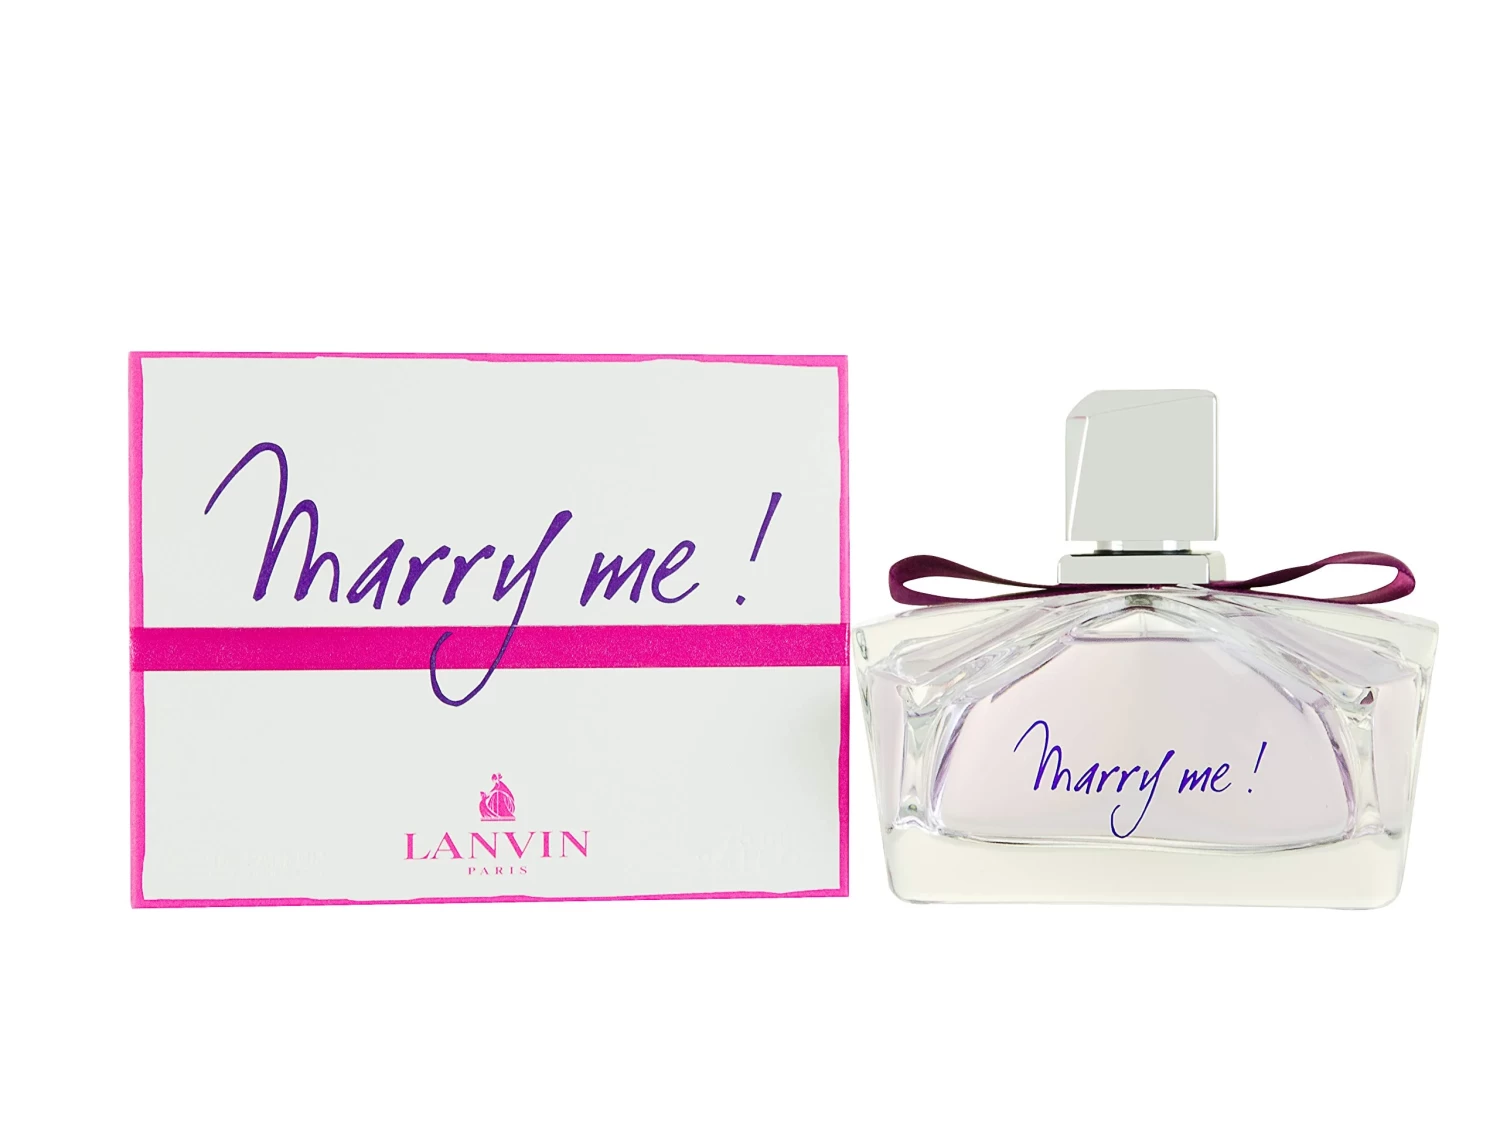 Lanvin Marry Me For Women Eau De Parfum 75ml